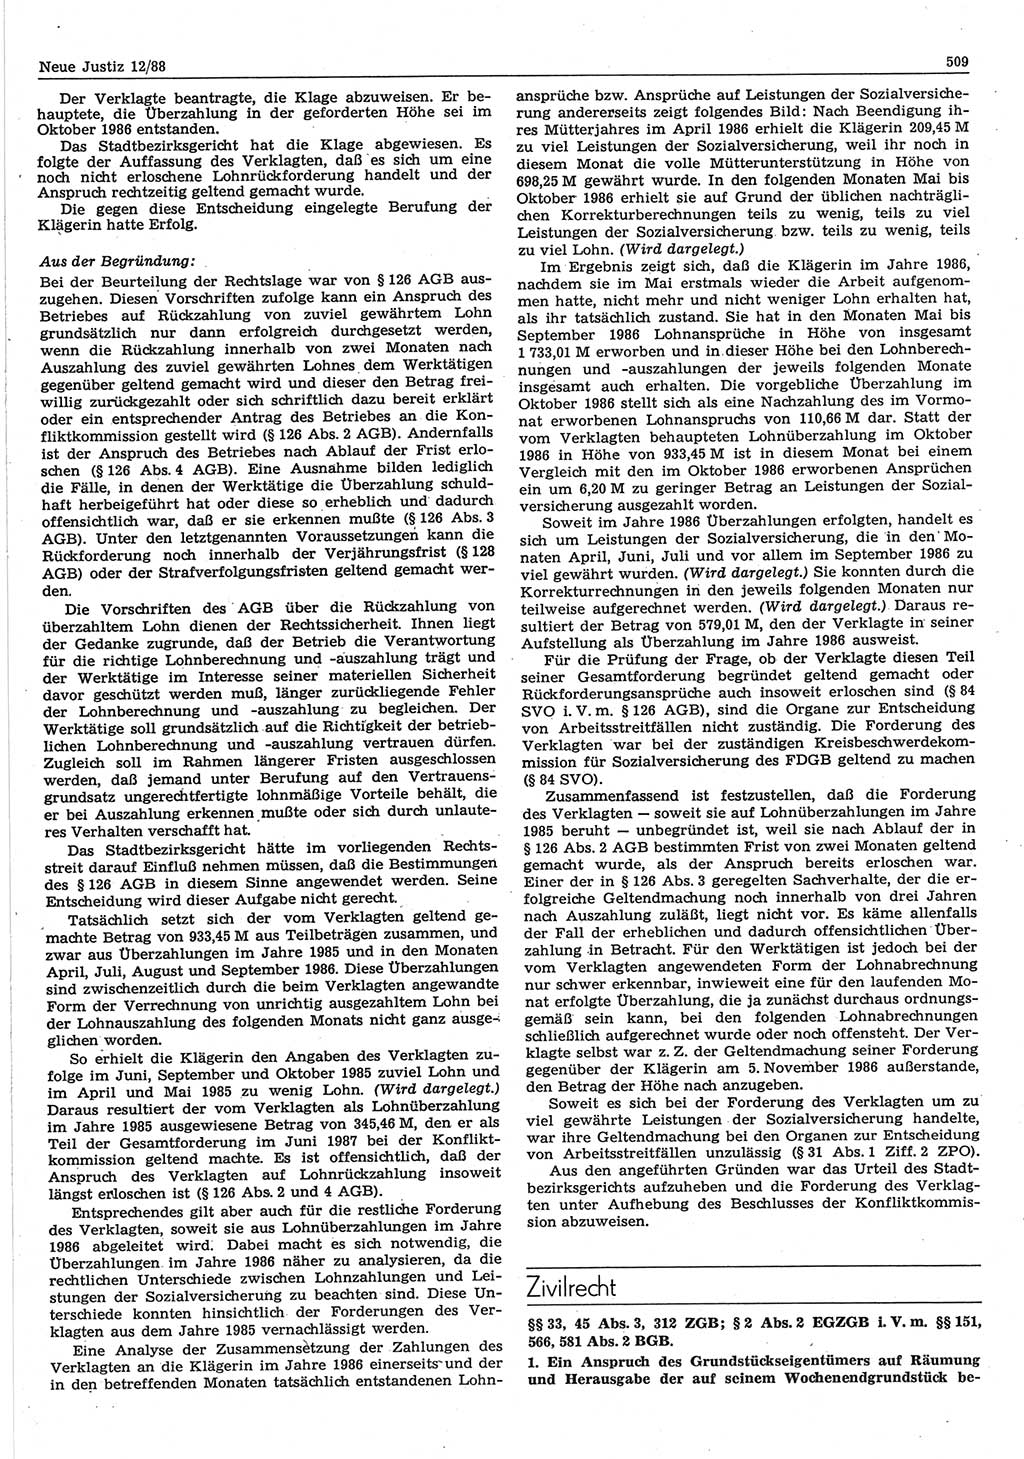 Neue Justiz (NJ), Zeitschrift für sozialistisches Recht und Gesetzlichkeit [Deutsche Demokratische Republik (DDR)], 42. Jahrgang 1988, Seite 509 (NJ DDR 1988, S. 509)